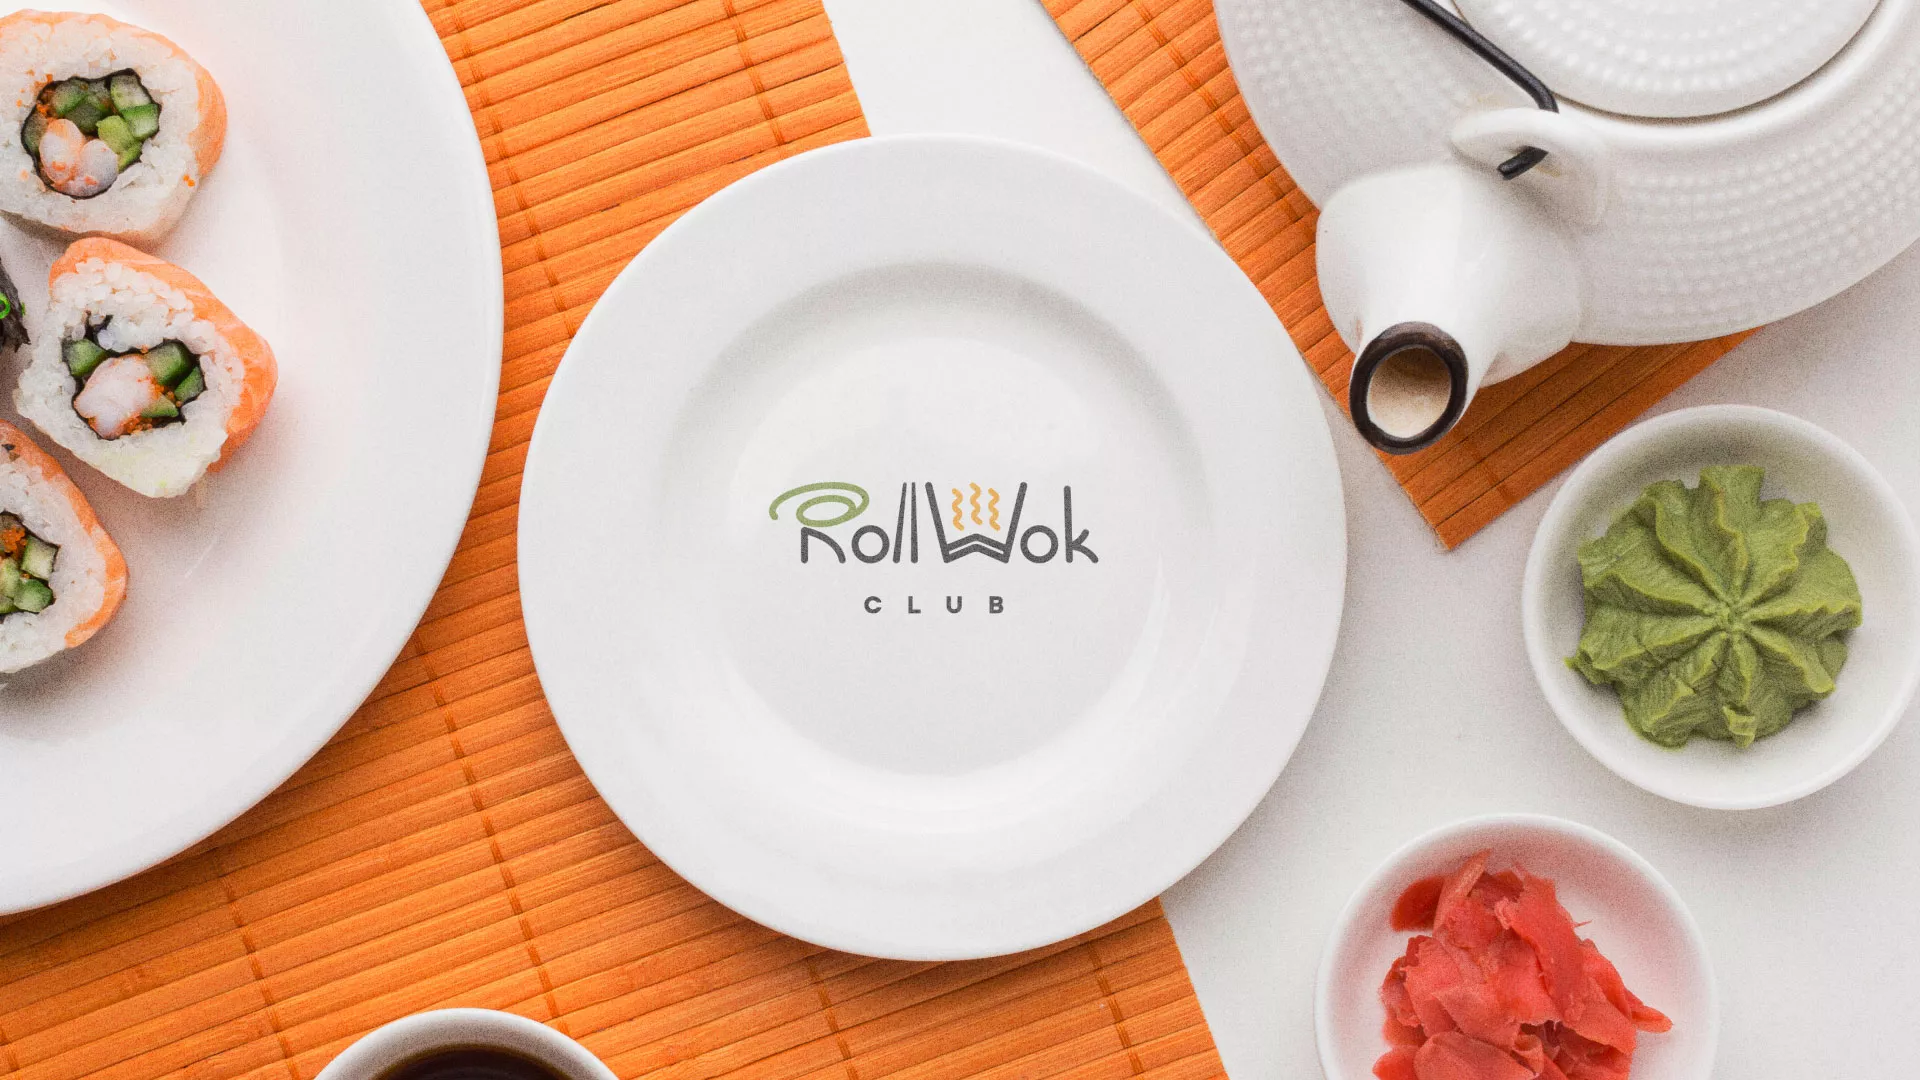 Разработка логотипа и фирменного стиля суши-бара «Roll Wok Club» в Абдулино